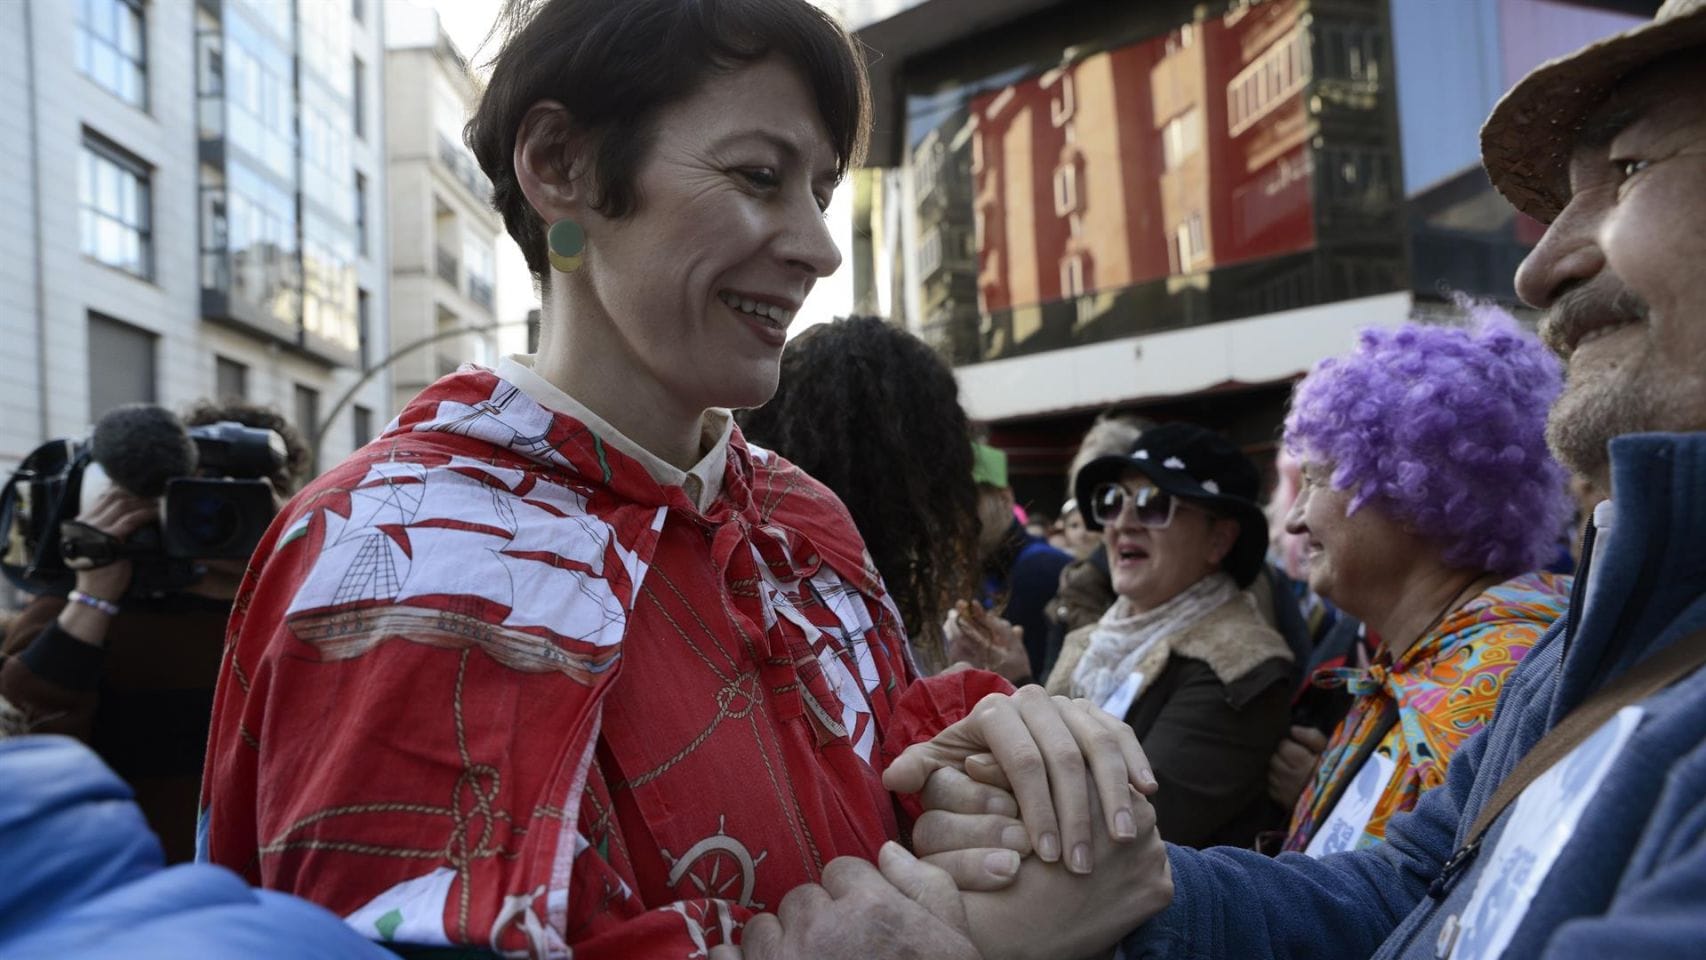 La candidata del BNG a la presidencia de la Xunta, Ana Pontón, vestida con una túnica de colores llamada 'capuchón', habitual disfraz de los vecinos de Verín, durante su participación en el Entroido de Verín, en la Praza do Con.